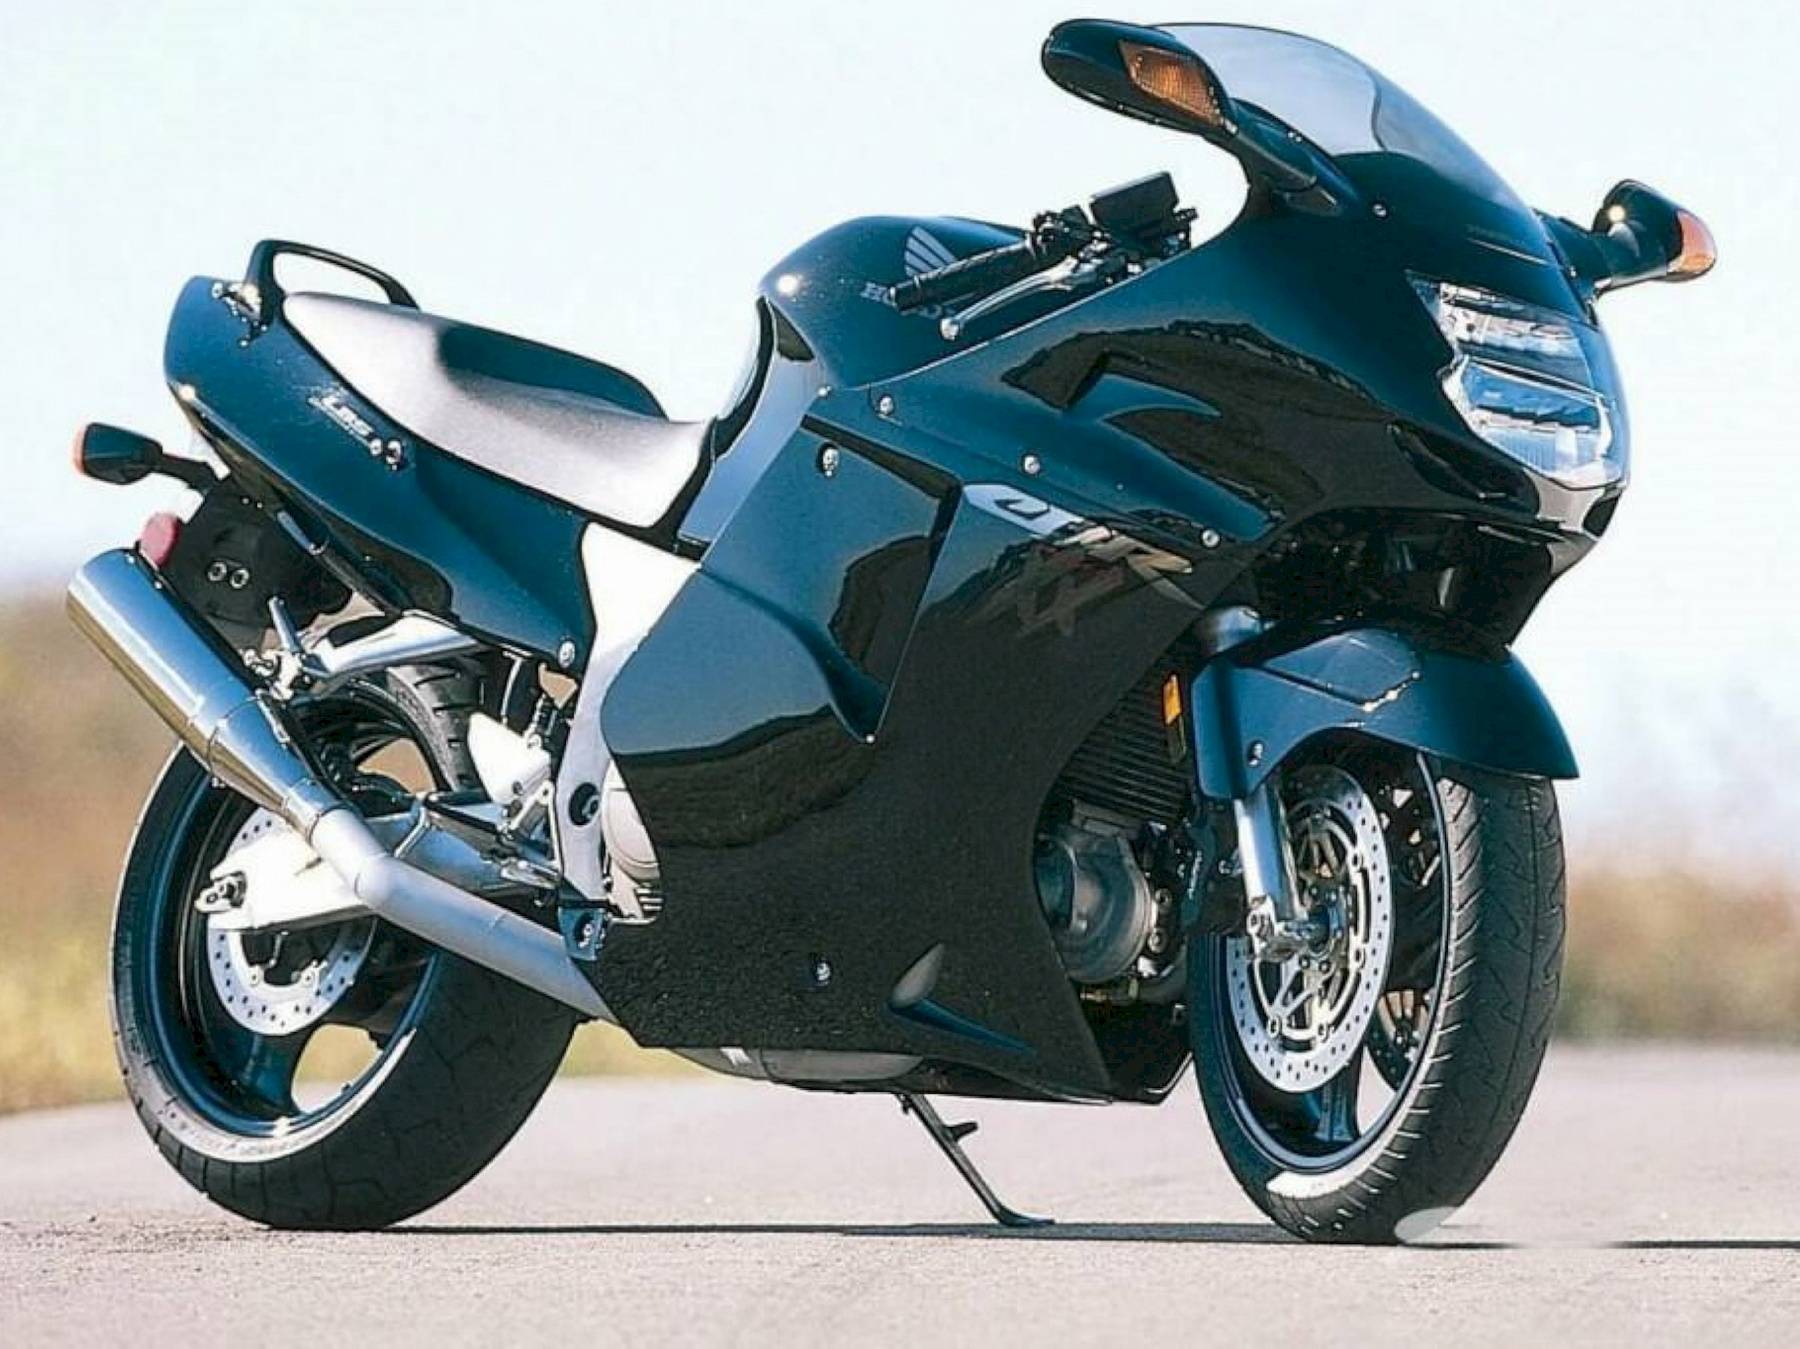 Обзор мотоцикла honda cbr 1100 xx (cbr1100xx blackbird)